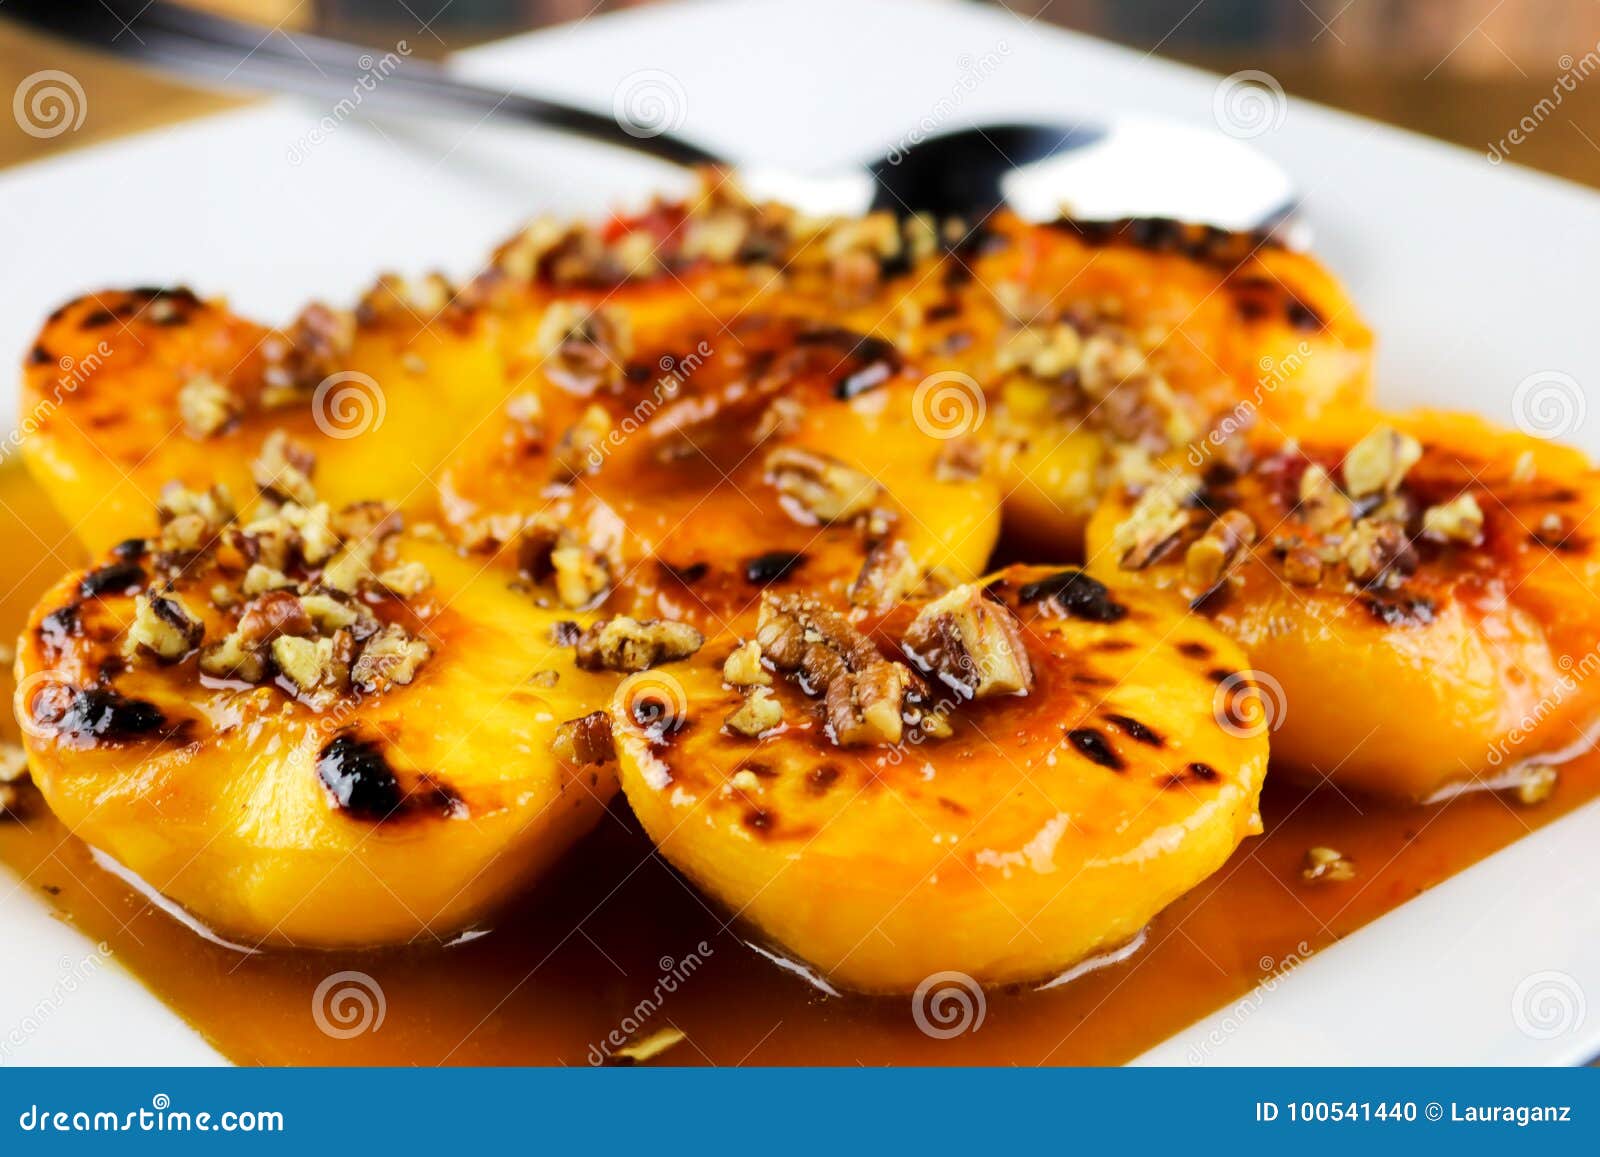 Honey Glazed Peaches. Überstiegen ein kürzlich gemachter Honig glasig-glänzende Pfirsiche mit Pekannüssen